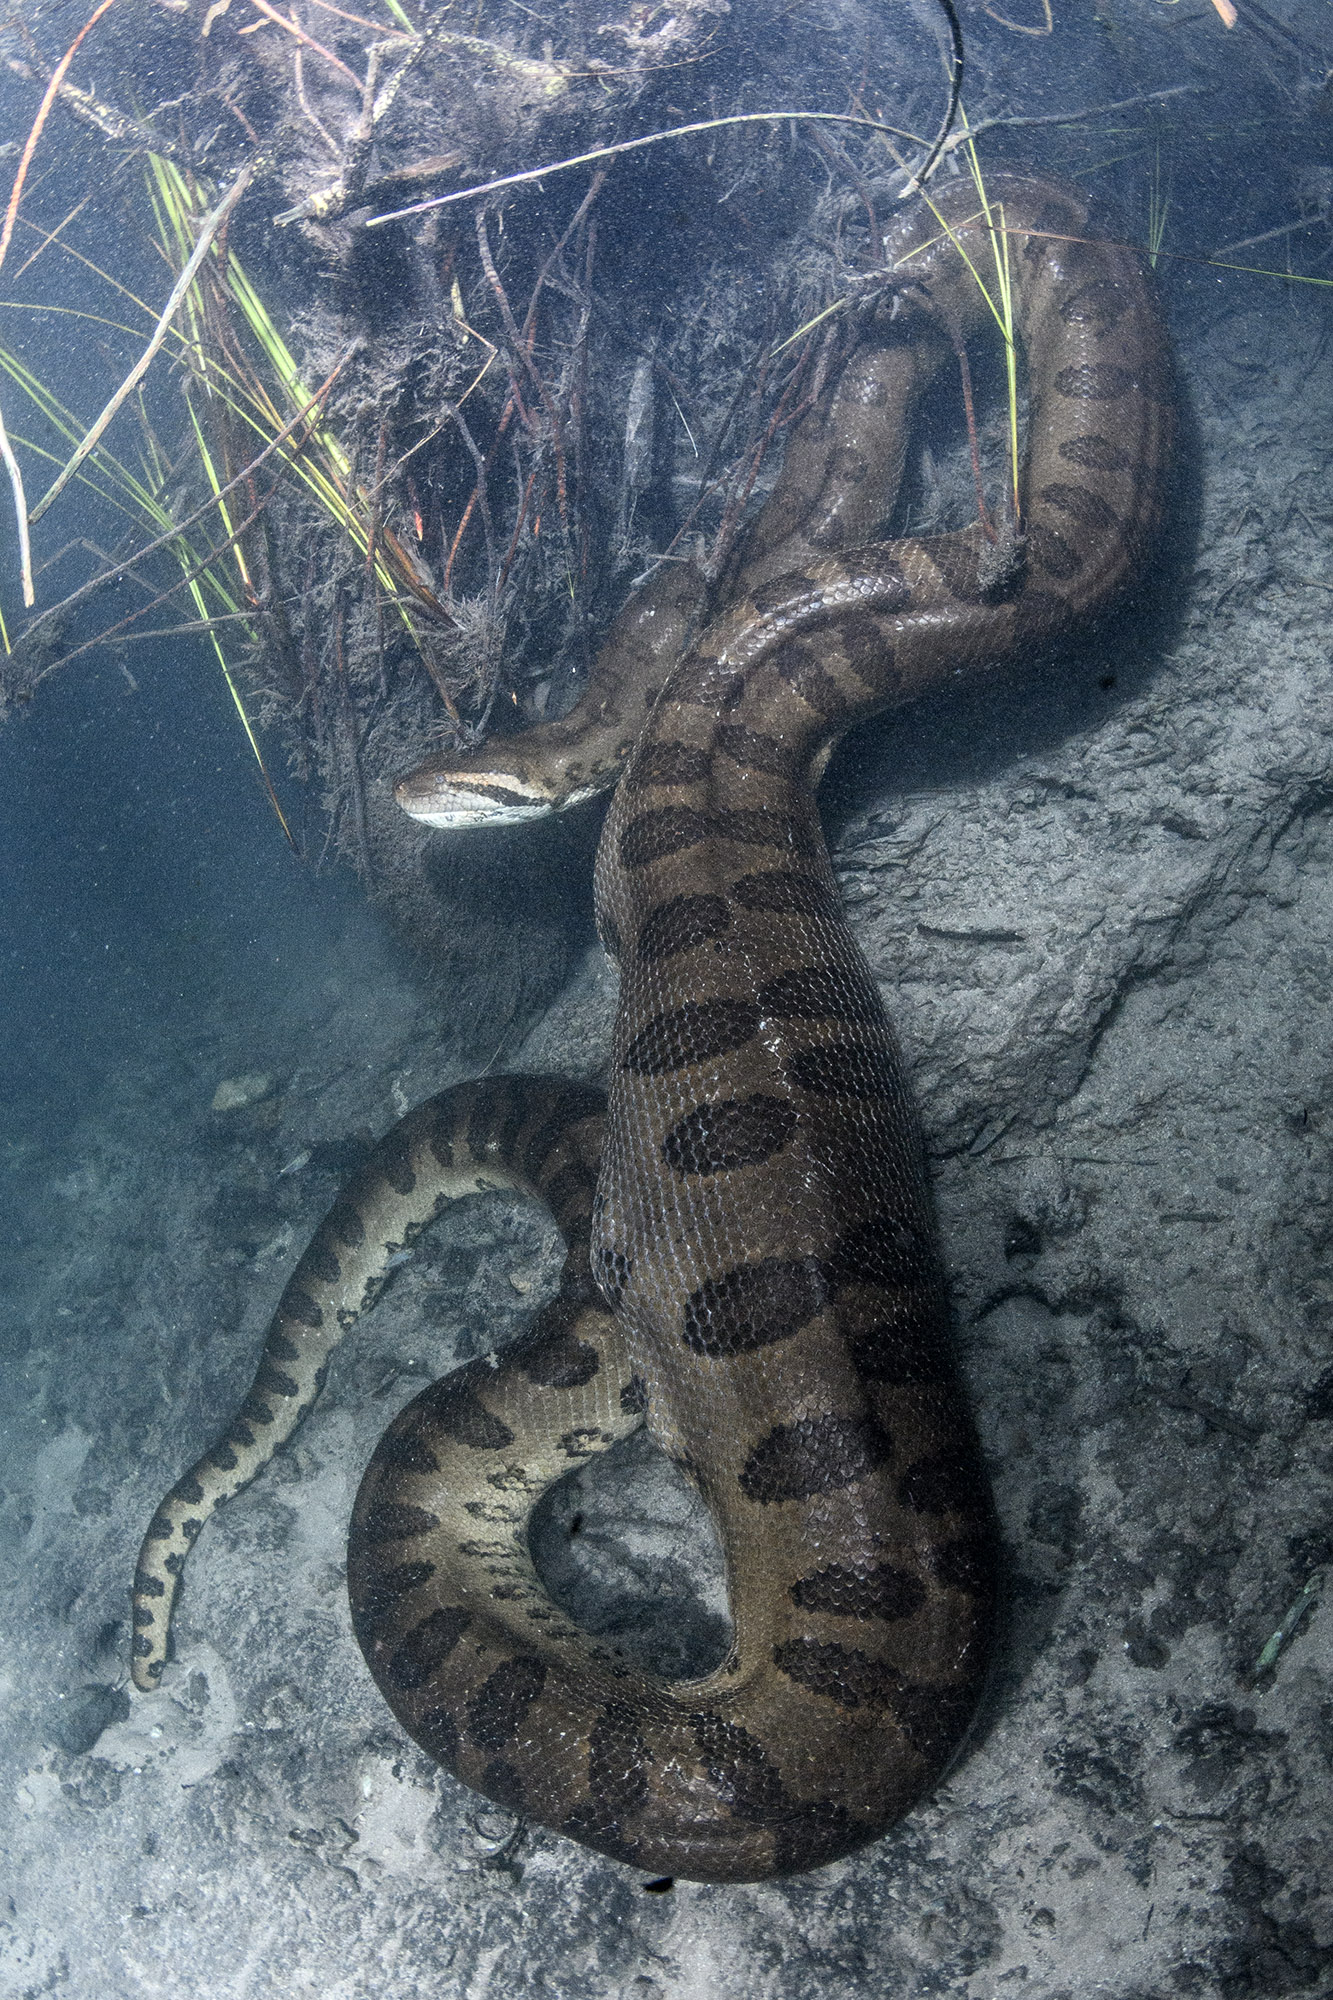 Giant Anaconda in the Rio Formoso in Brazil.